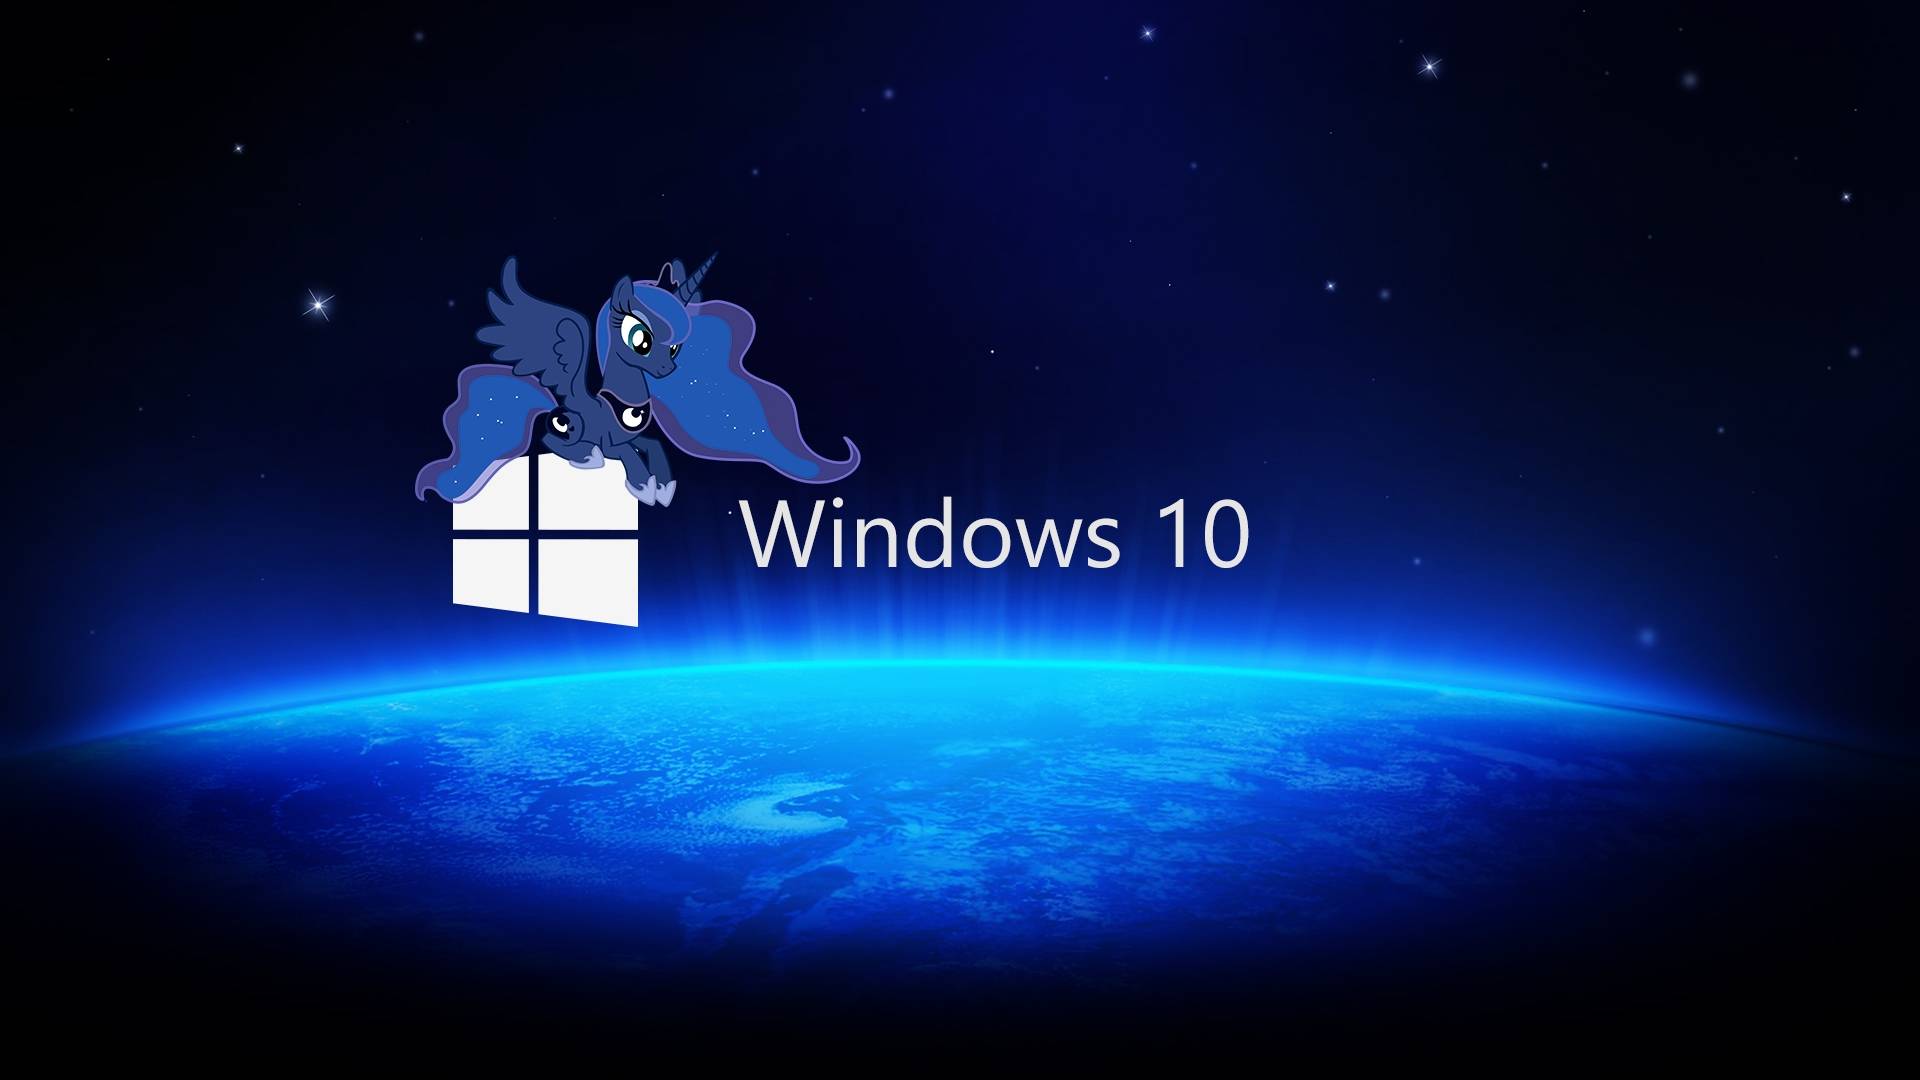 Обои на 10 лайт. Обои Windows. Рабочий стол Windows 10. Обои виндовс 10. Фоновые рисунки Windows 10.